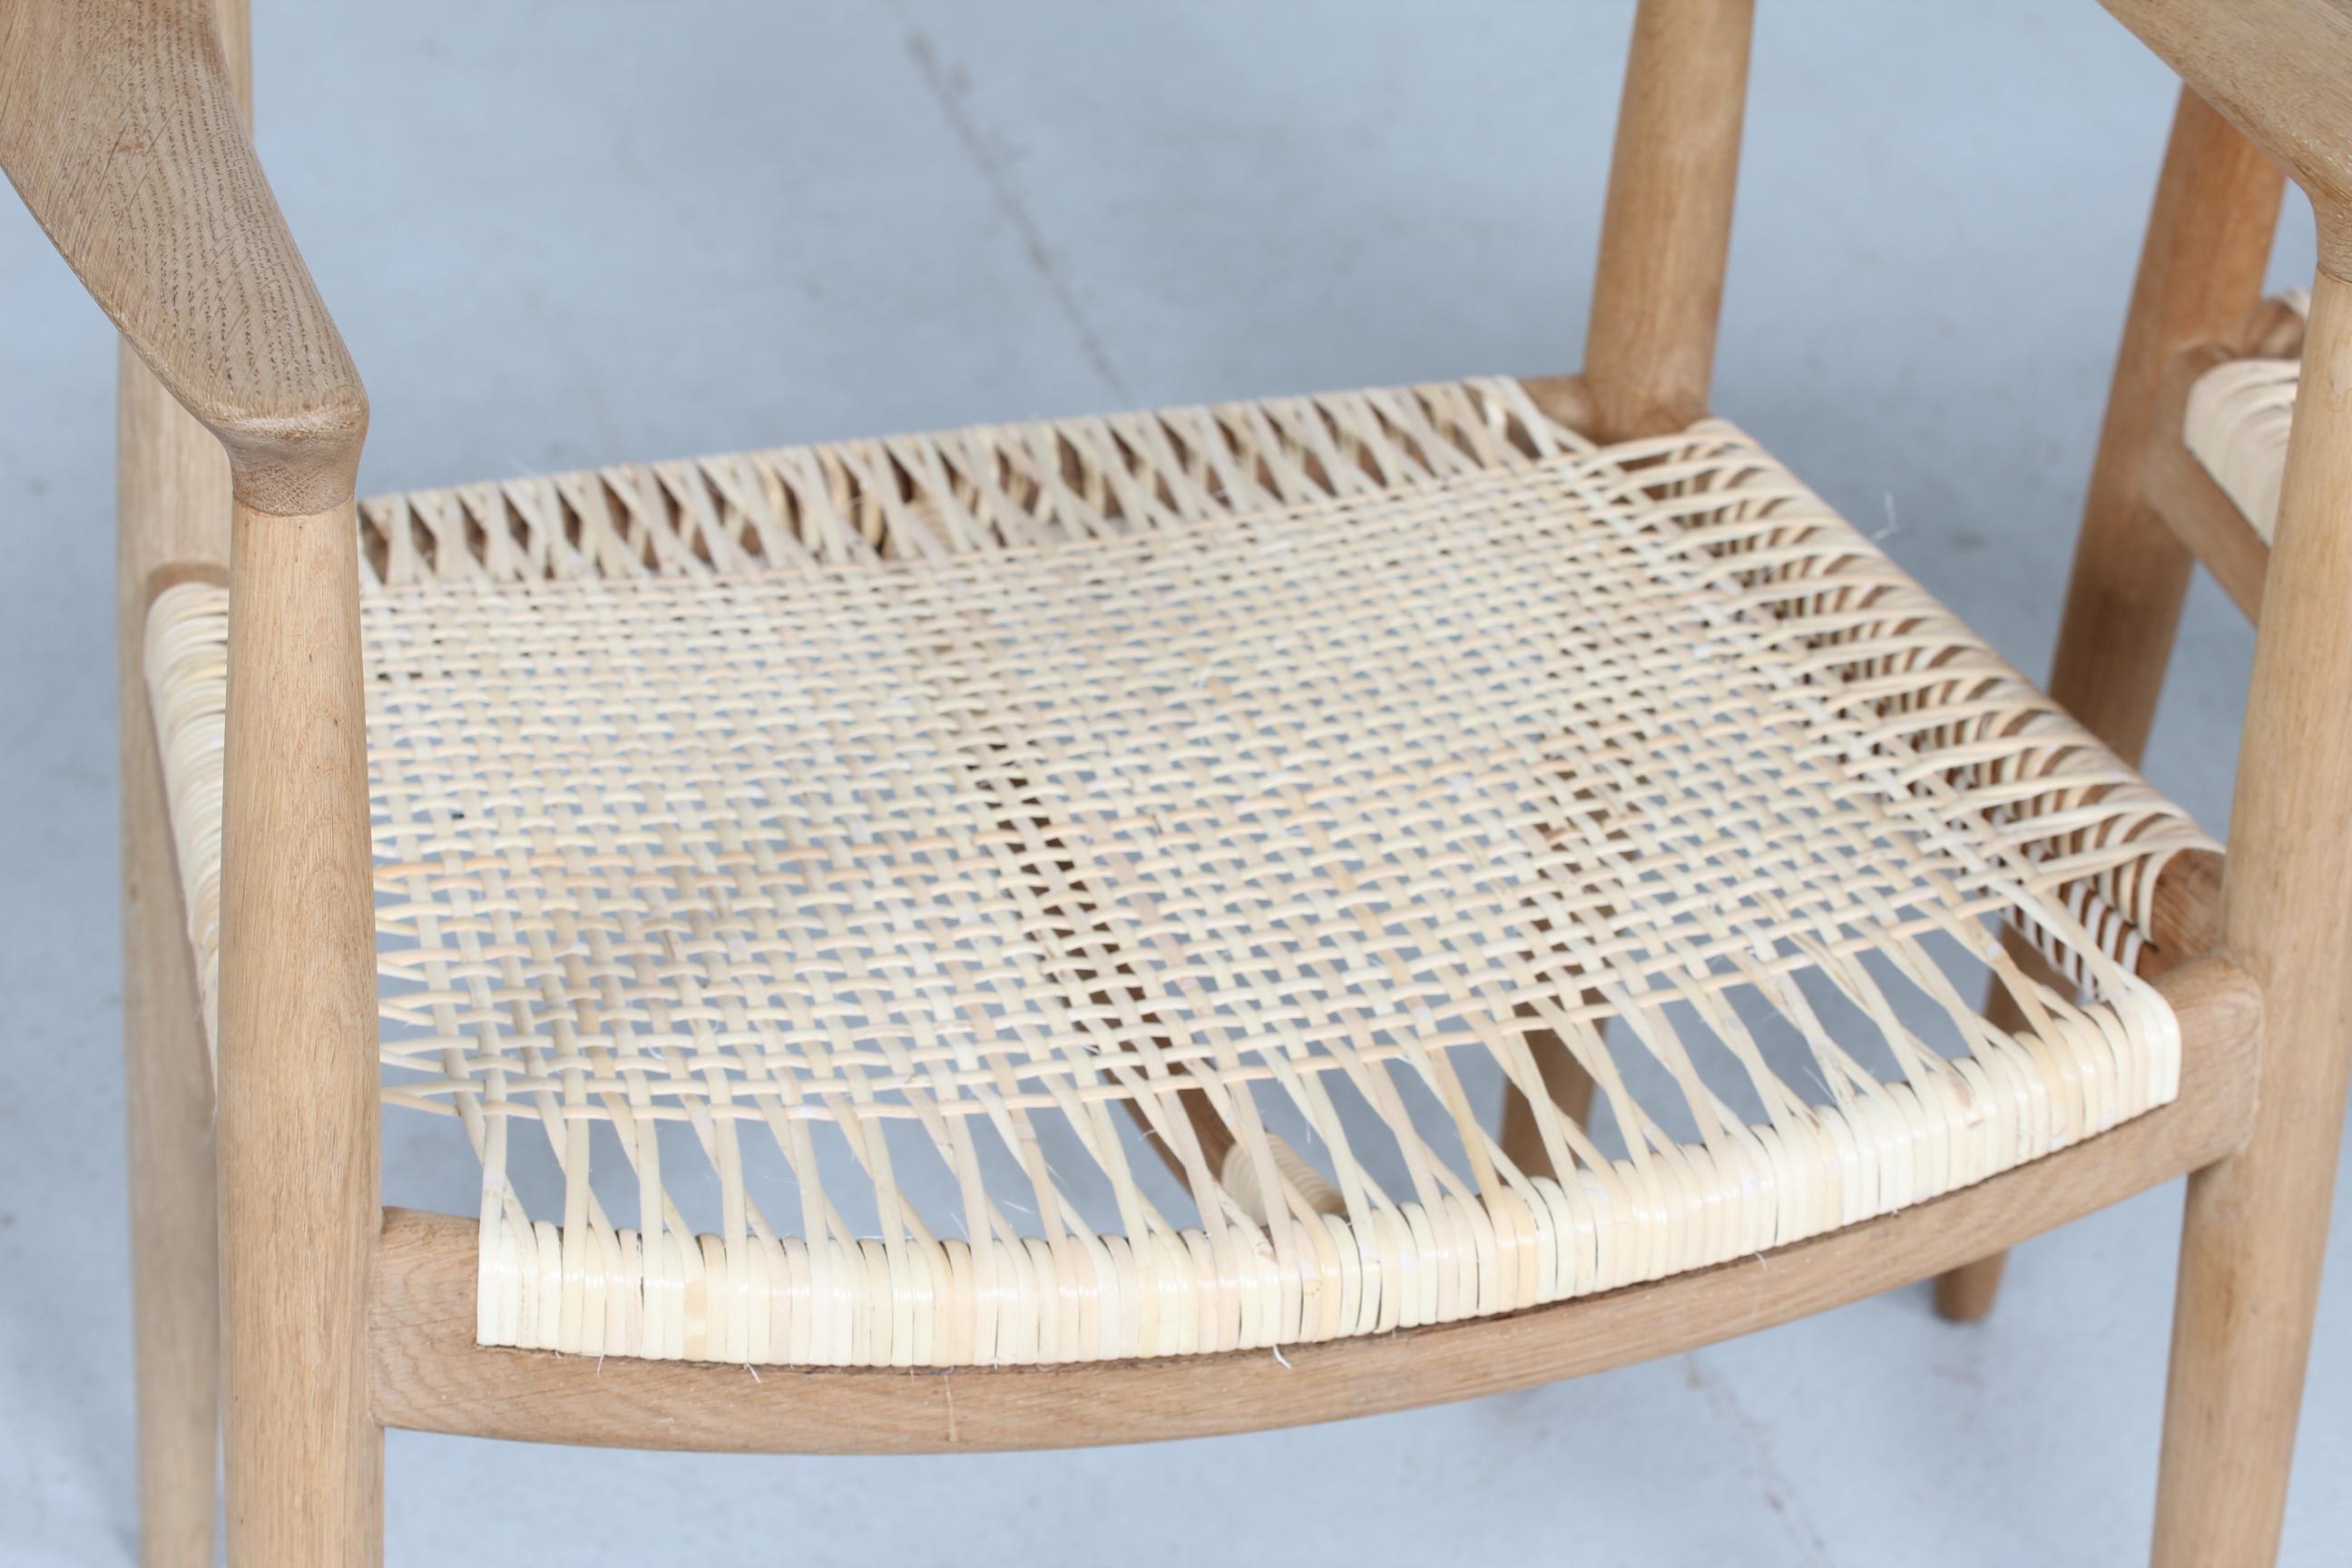 Danois Paire de chaises de Hans J Wegner 503 en chêne et en rotin fabriquées par Johannes Hansen:: années 1960